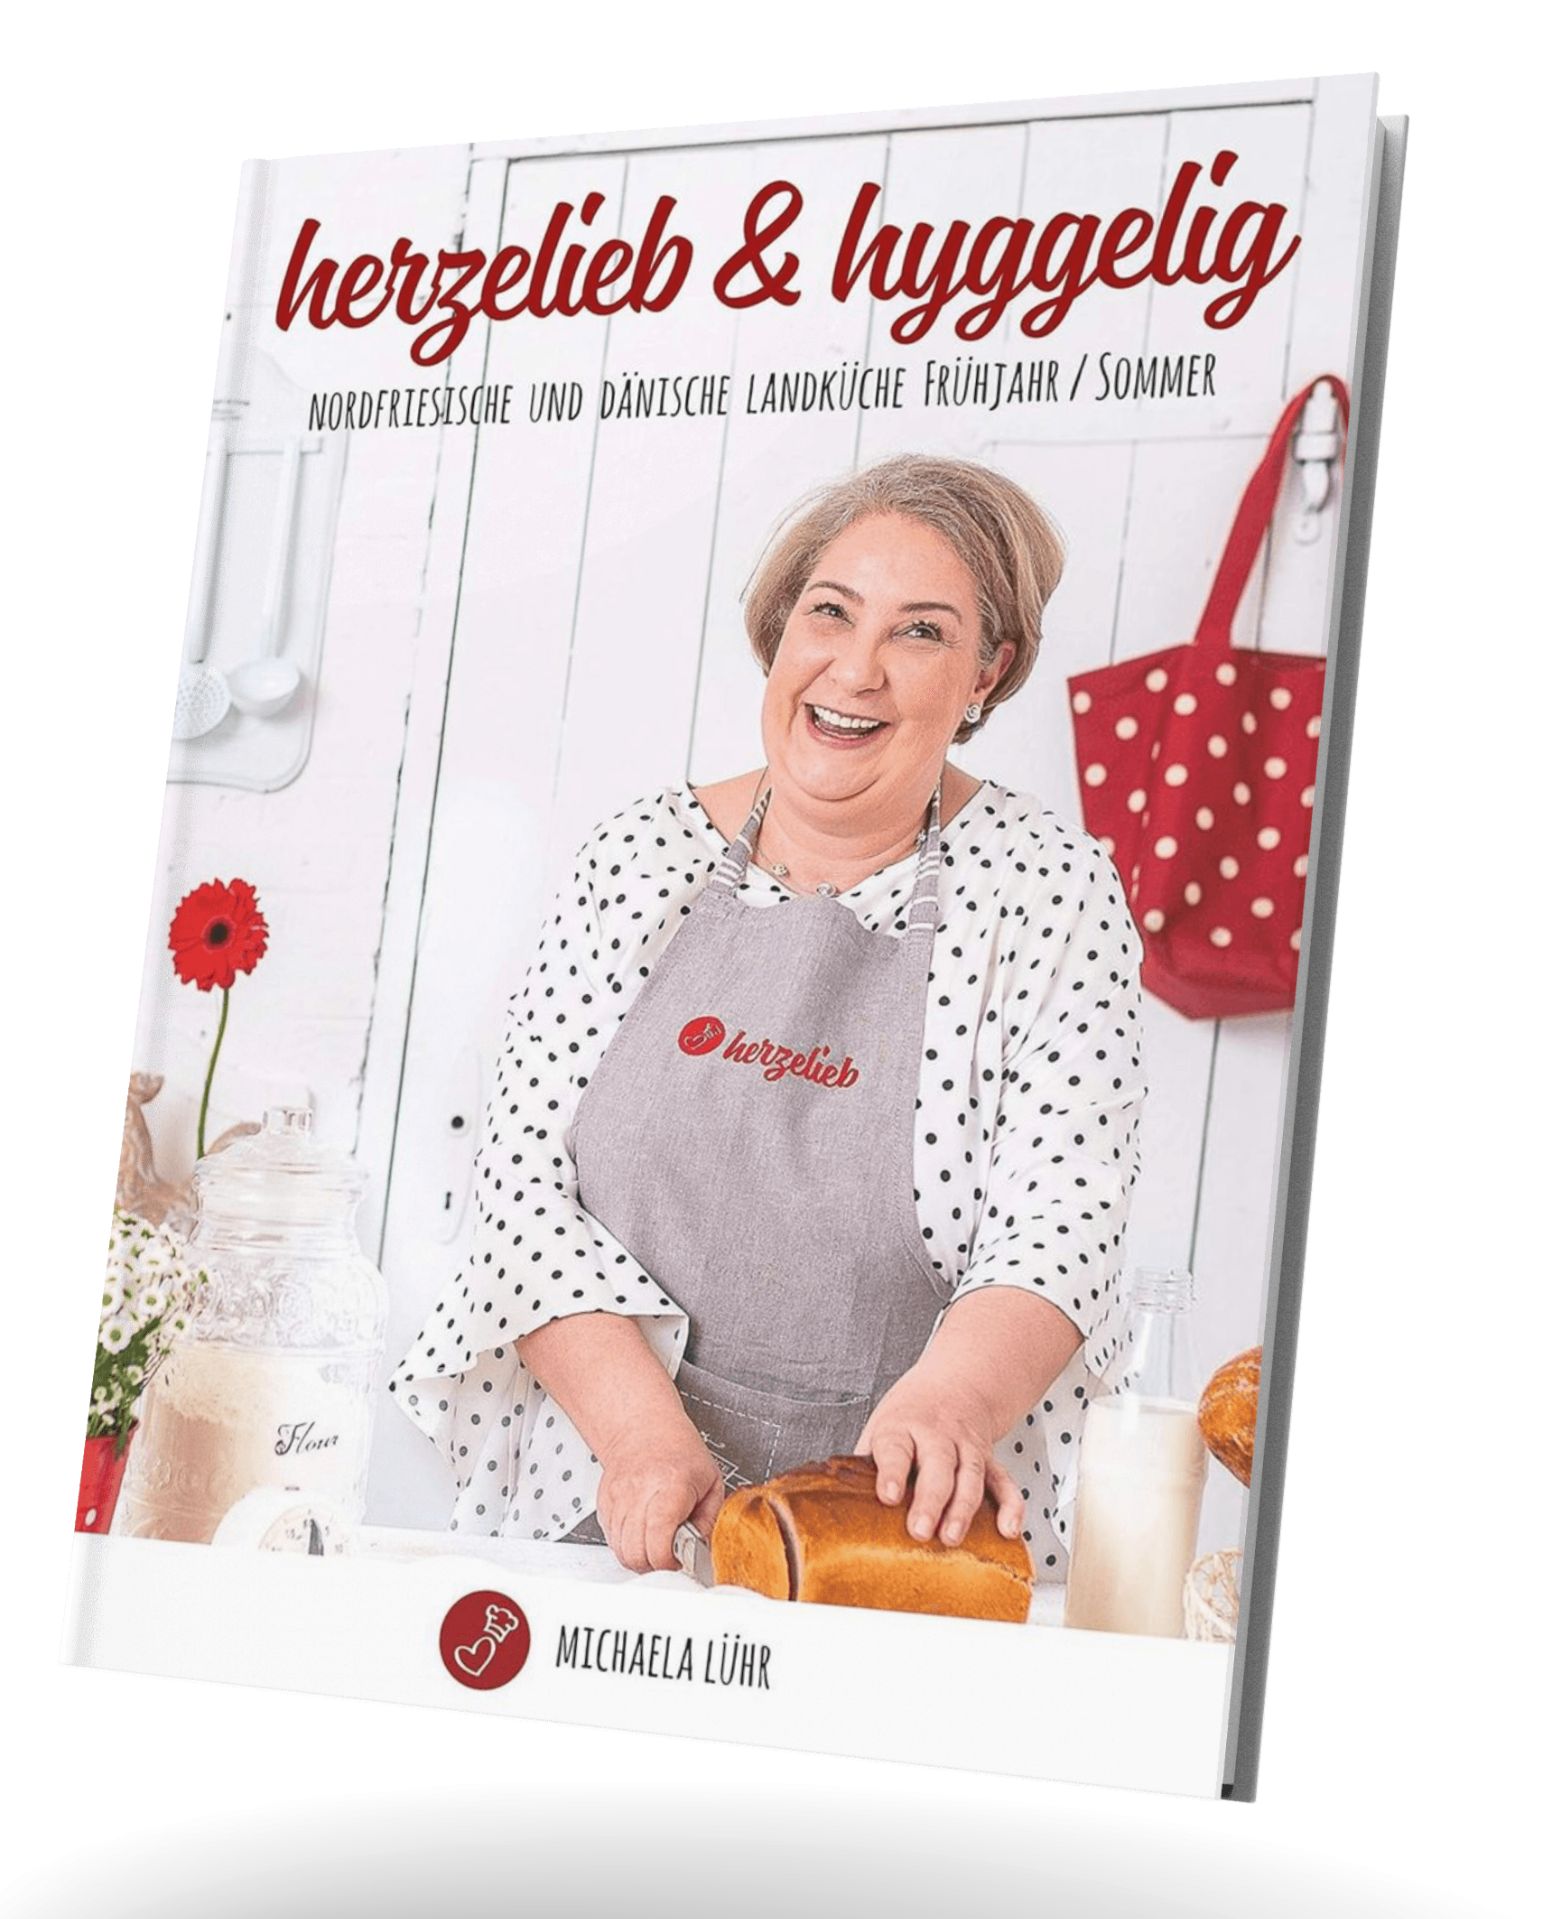 herzelieb & hyggelig Kochbuch von Michaela Lühr 